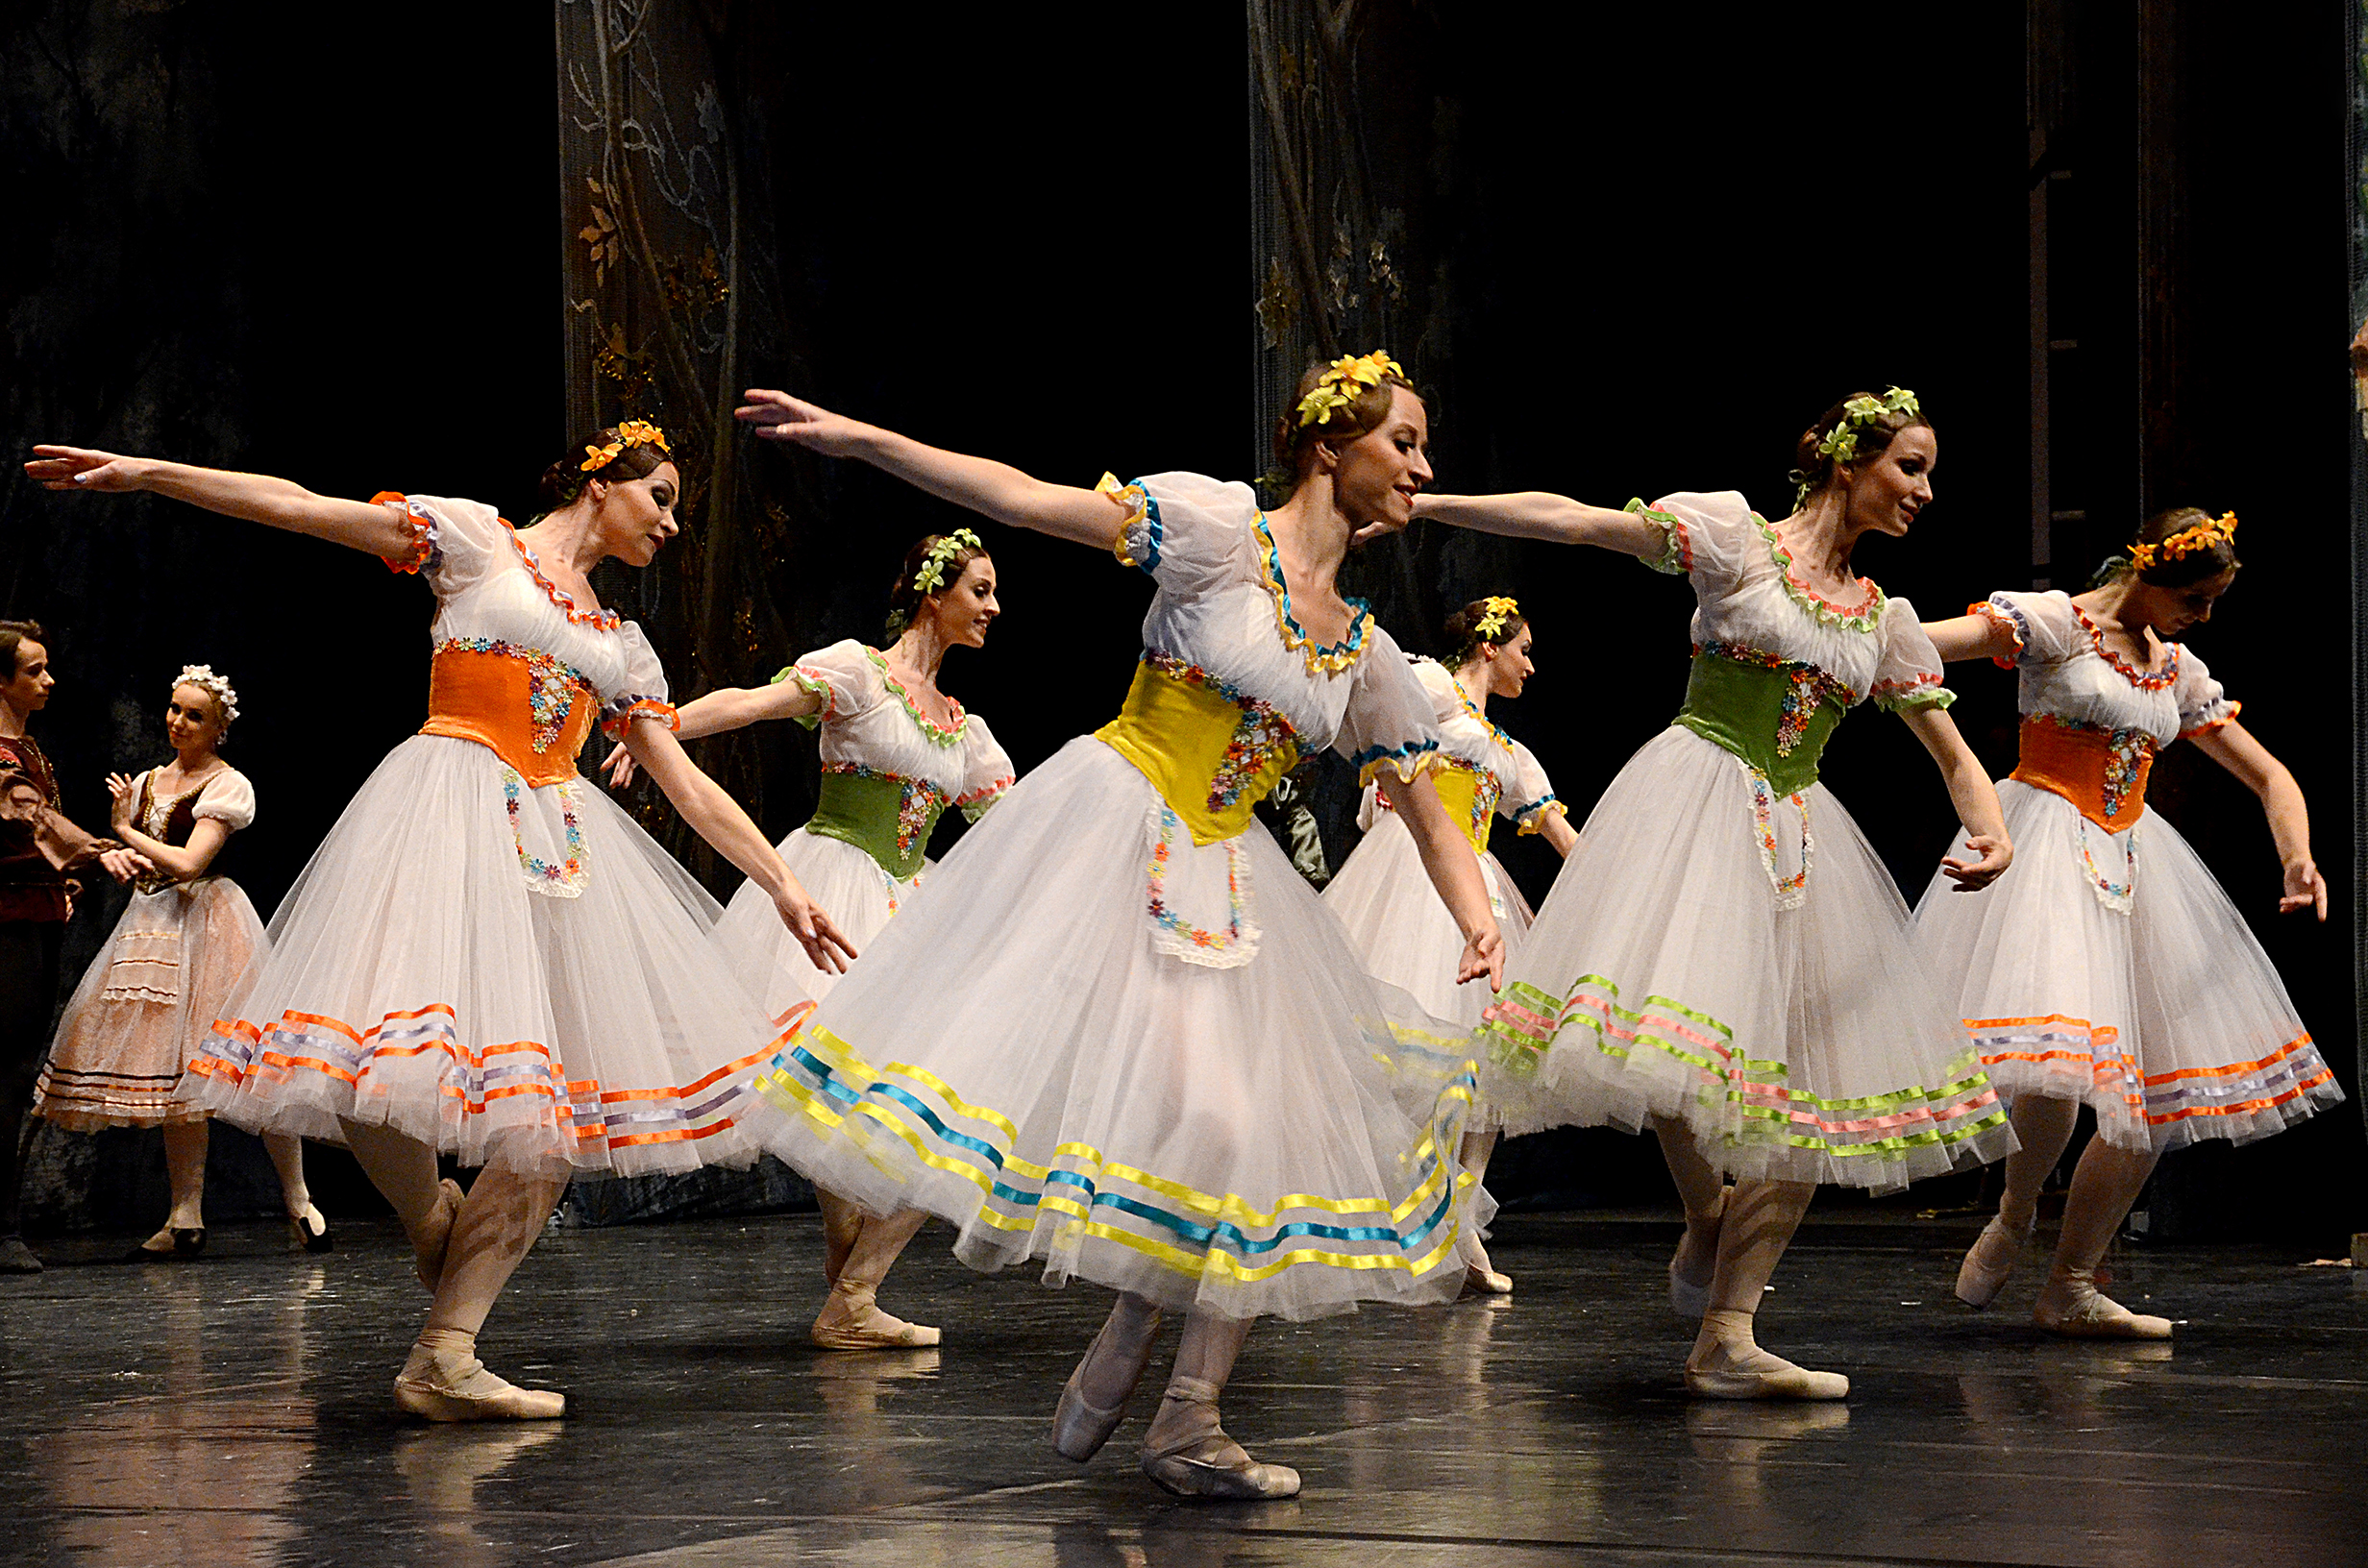 El International Ballet Company llega al Teatro Chapí con Giselle